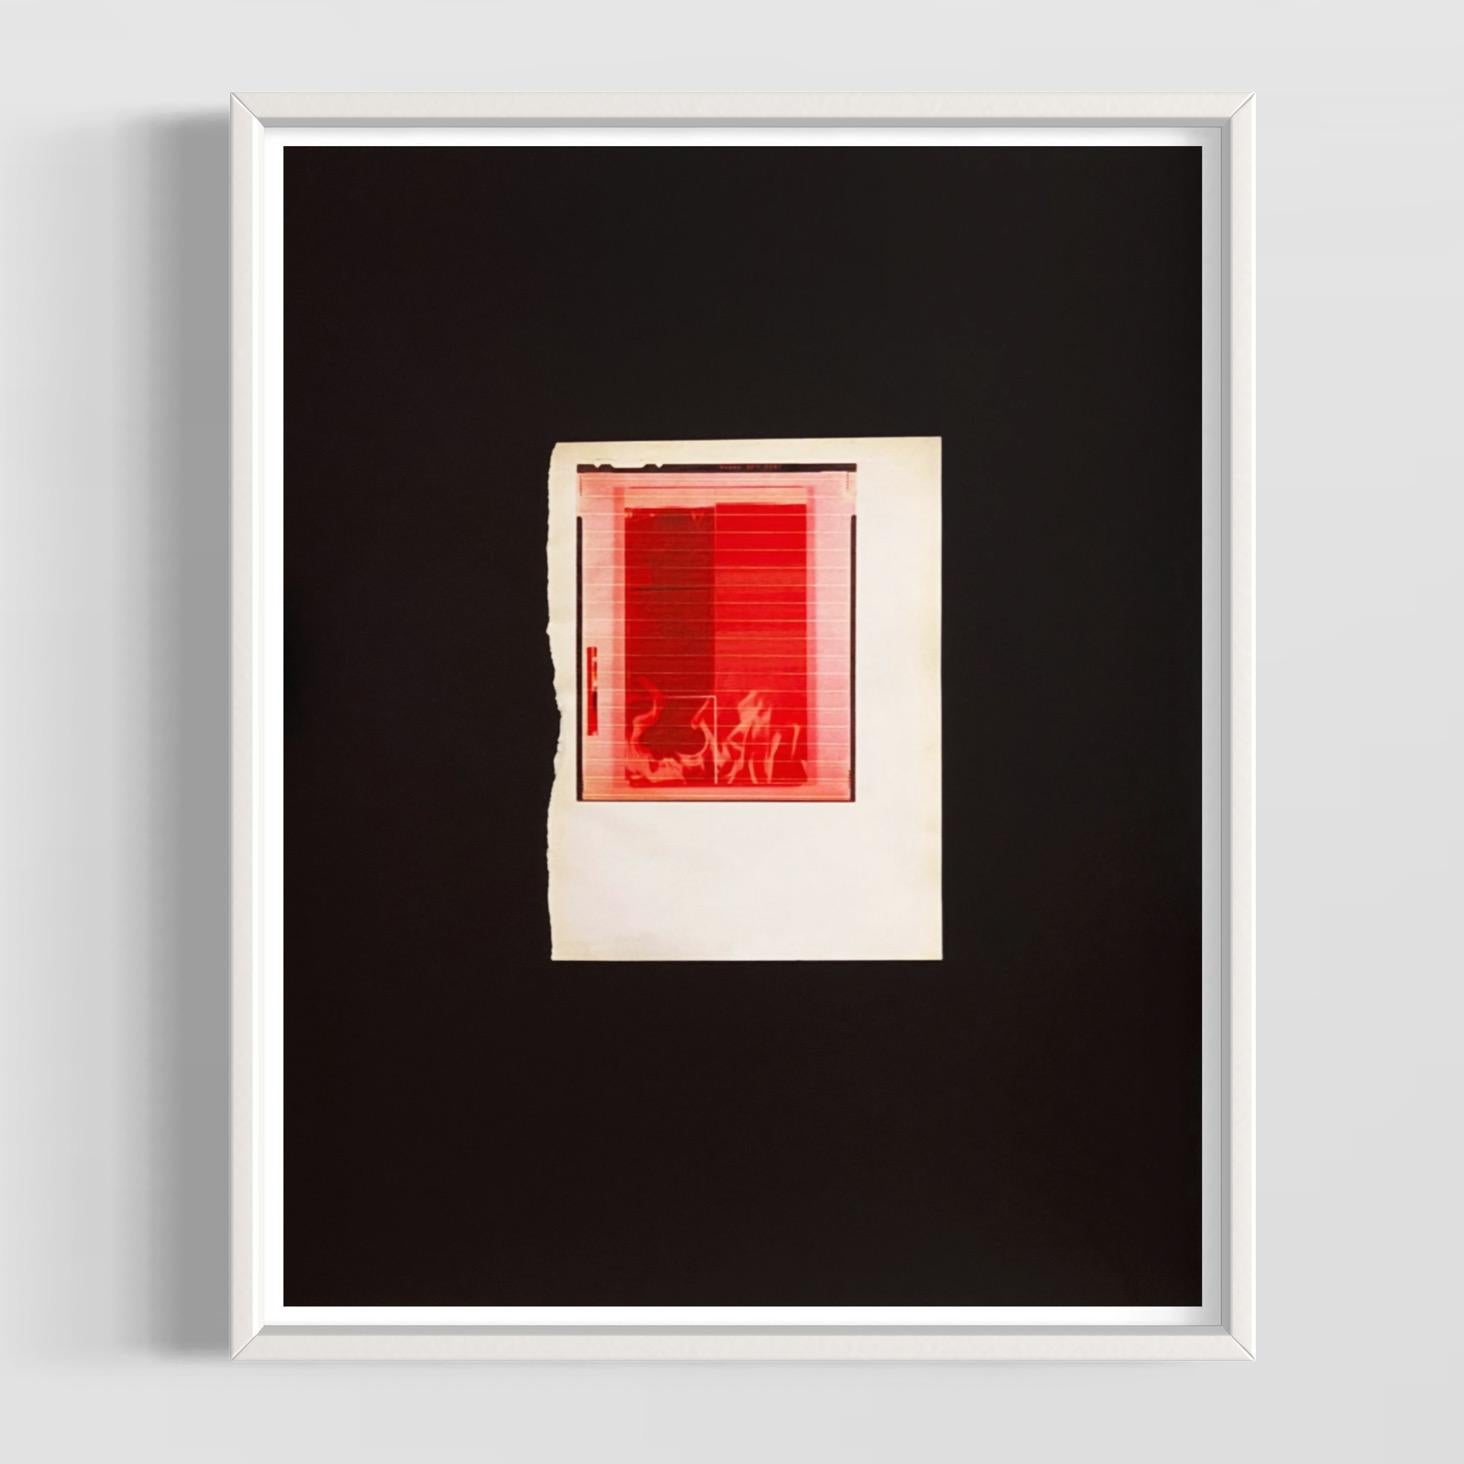 Wade Guyton (américain, né en 1972)
Feu rouge pour le SMC, 2018
Support : Impression Epson Ultrachrome HDX sur papier d'art couché
Dimensions : 19 x 15 in (48 x 38 cm)
Édition de 100 + 10 AP : Signé à la main et numéroté
Condit : Neuf (vendu sans